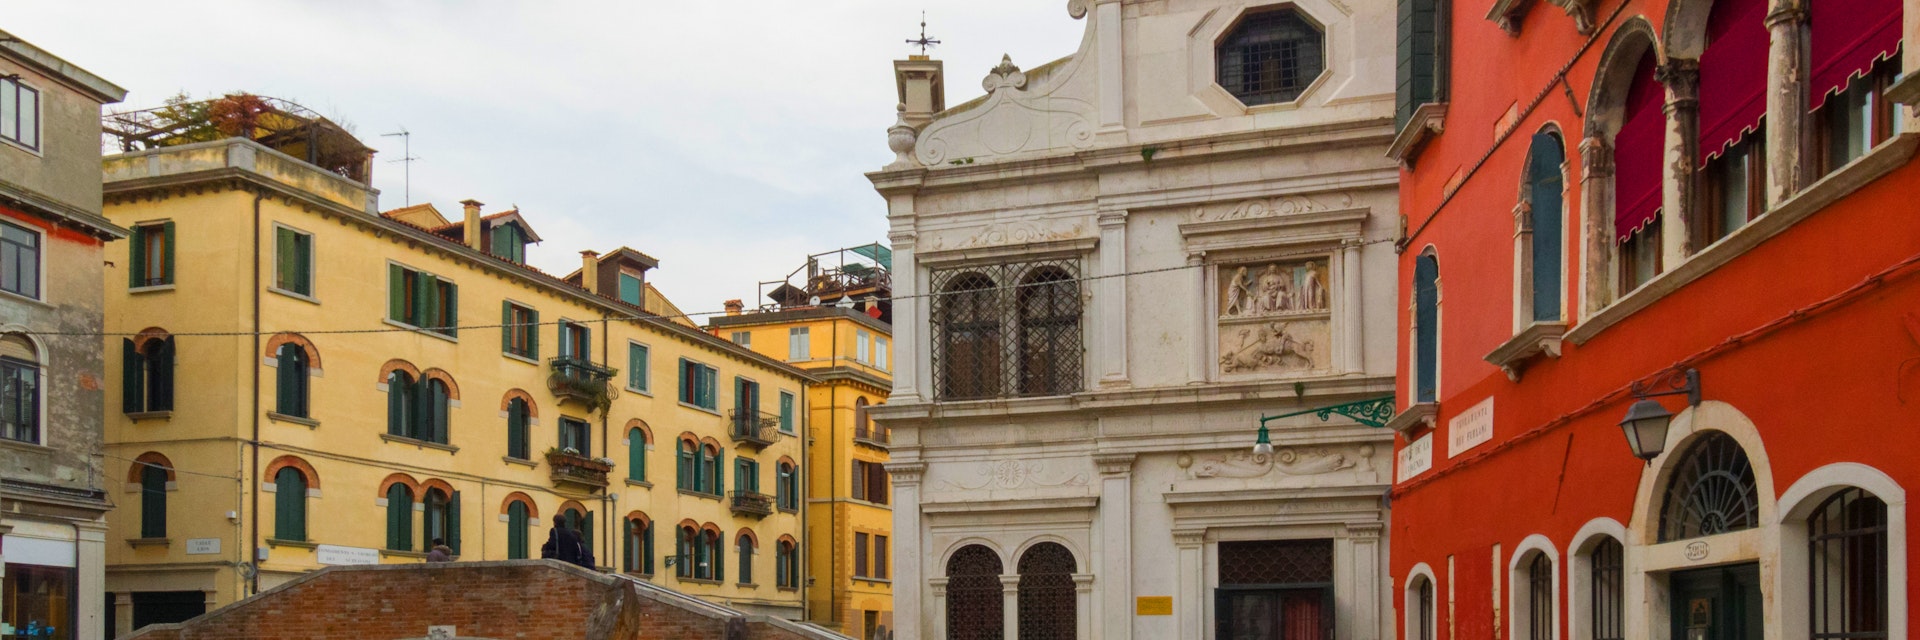 The building of the Scuola Dalmata dei Santi Giorgio e Trifone that hosts inside the paintings of Carpaccio